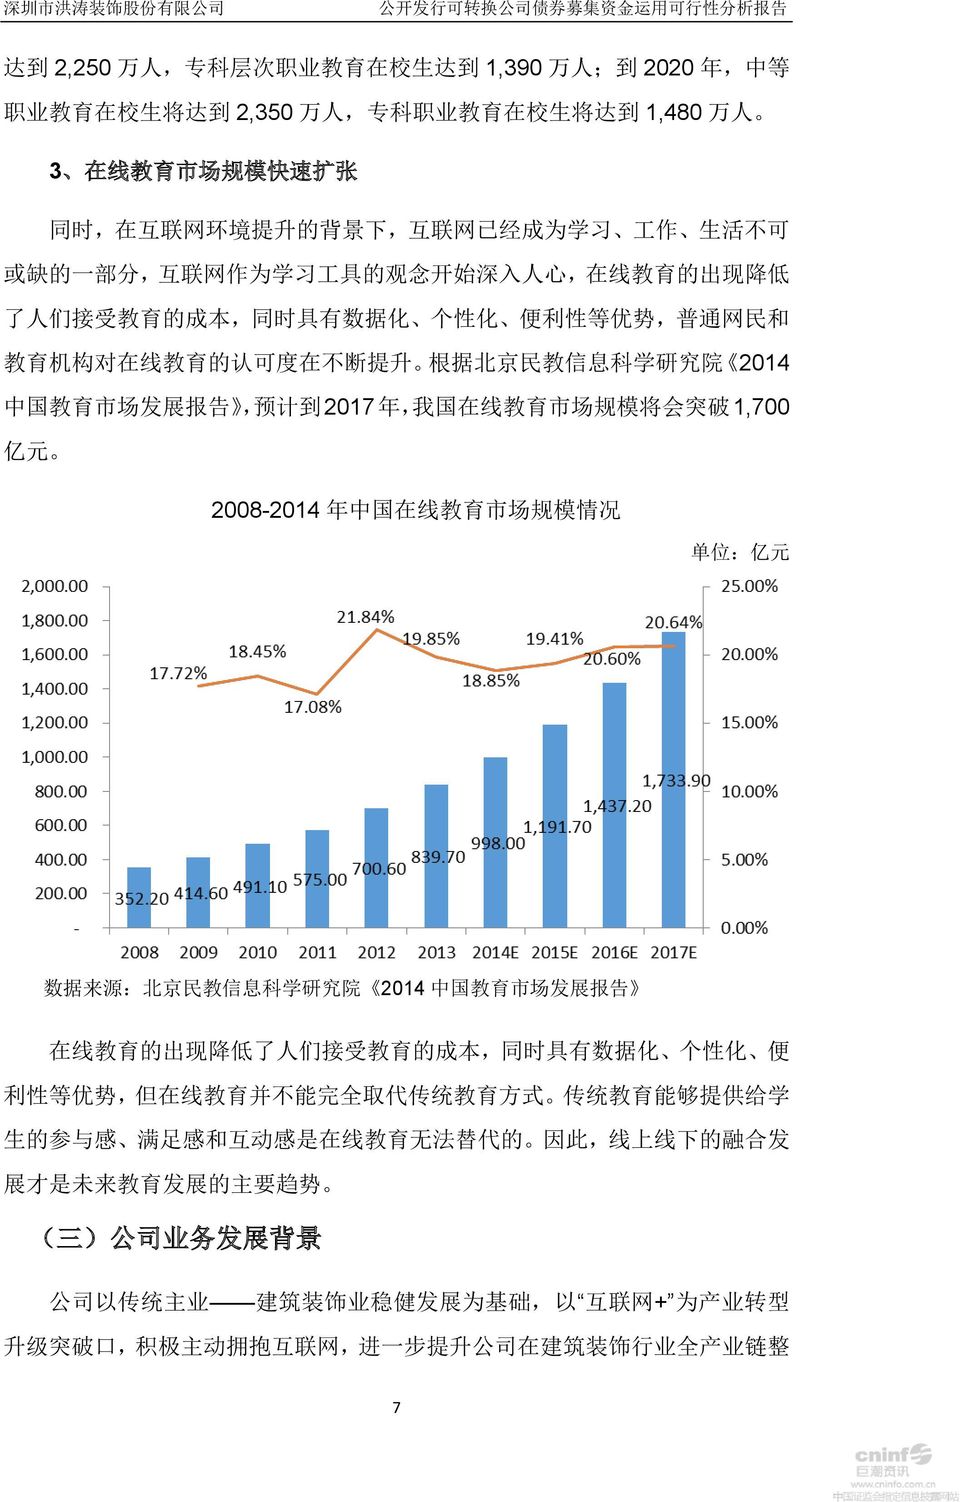 息 科 学 研 究 院 2014 中 国 教 育 市 场 发 展 报 告, 预 计 到 2017 年, 我 国 在 线 教 育 市 场 规 模 将 会 突 破 1,700 亿 元 2008-2014 年 中 国 在 线 教 育 市 场 规 模 情 况 单 位 : 亿 元 数 据 来 源 : 北 京 民 教 信 息 科 学 研 究 院 2014 中 国 教 育 市 场 发 展 报 告 在 线 教